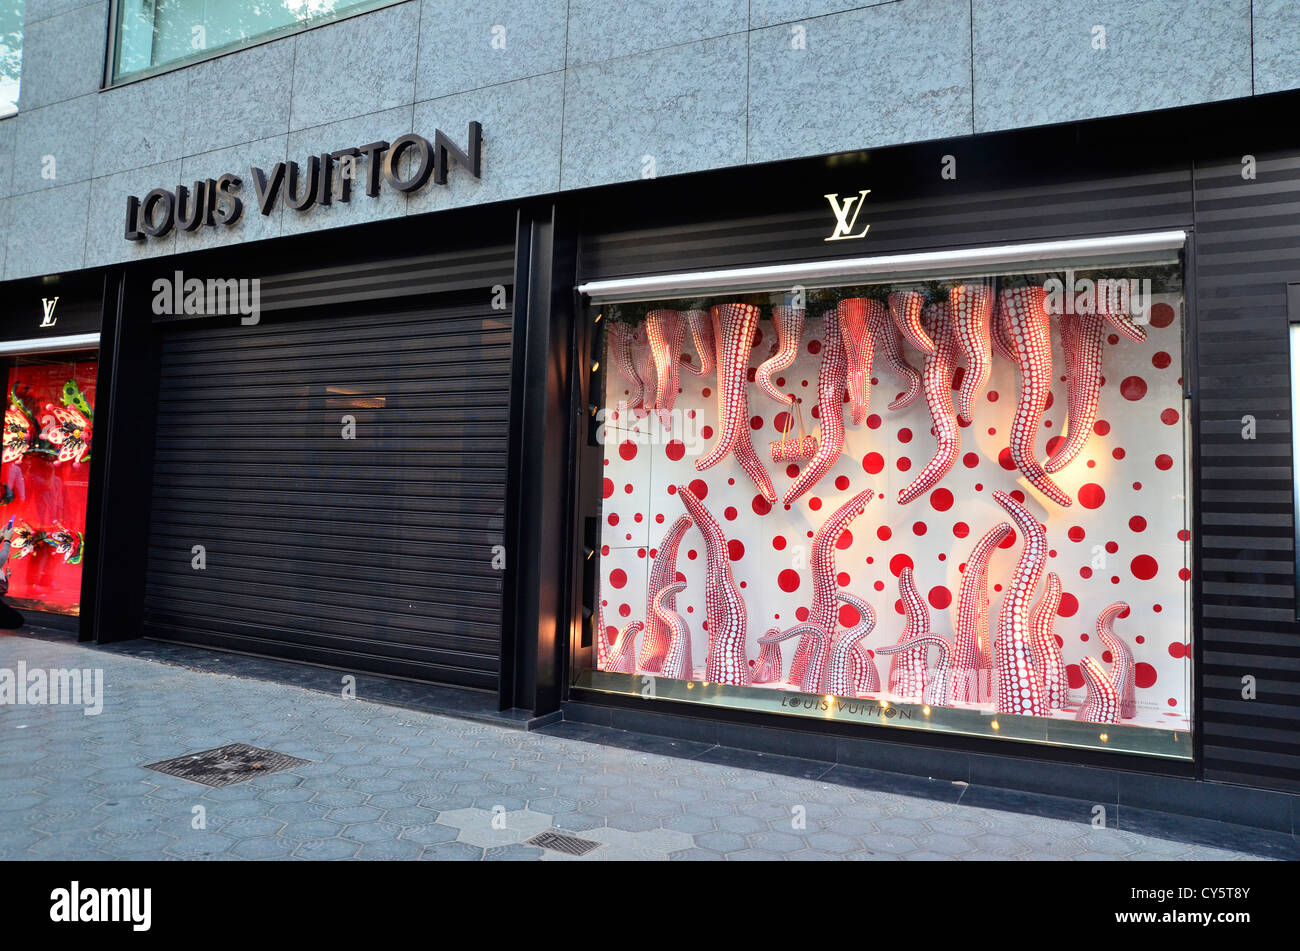 LOUIS VUITTON - 53 Photos & 34 Reviews - Barcelona, Barcelona